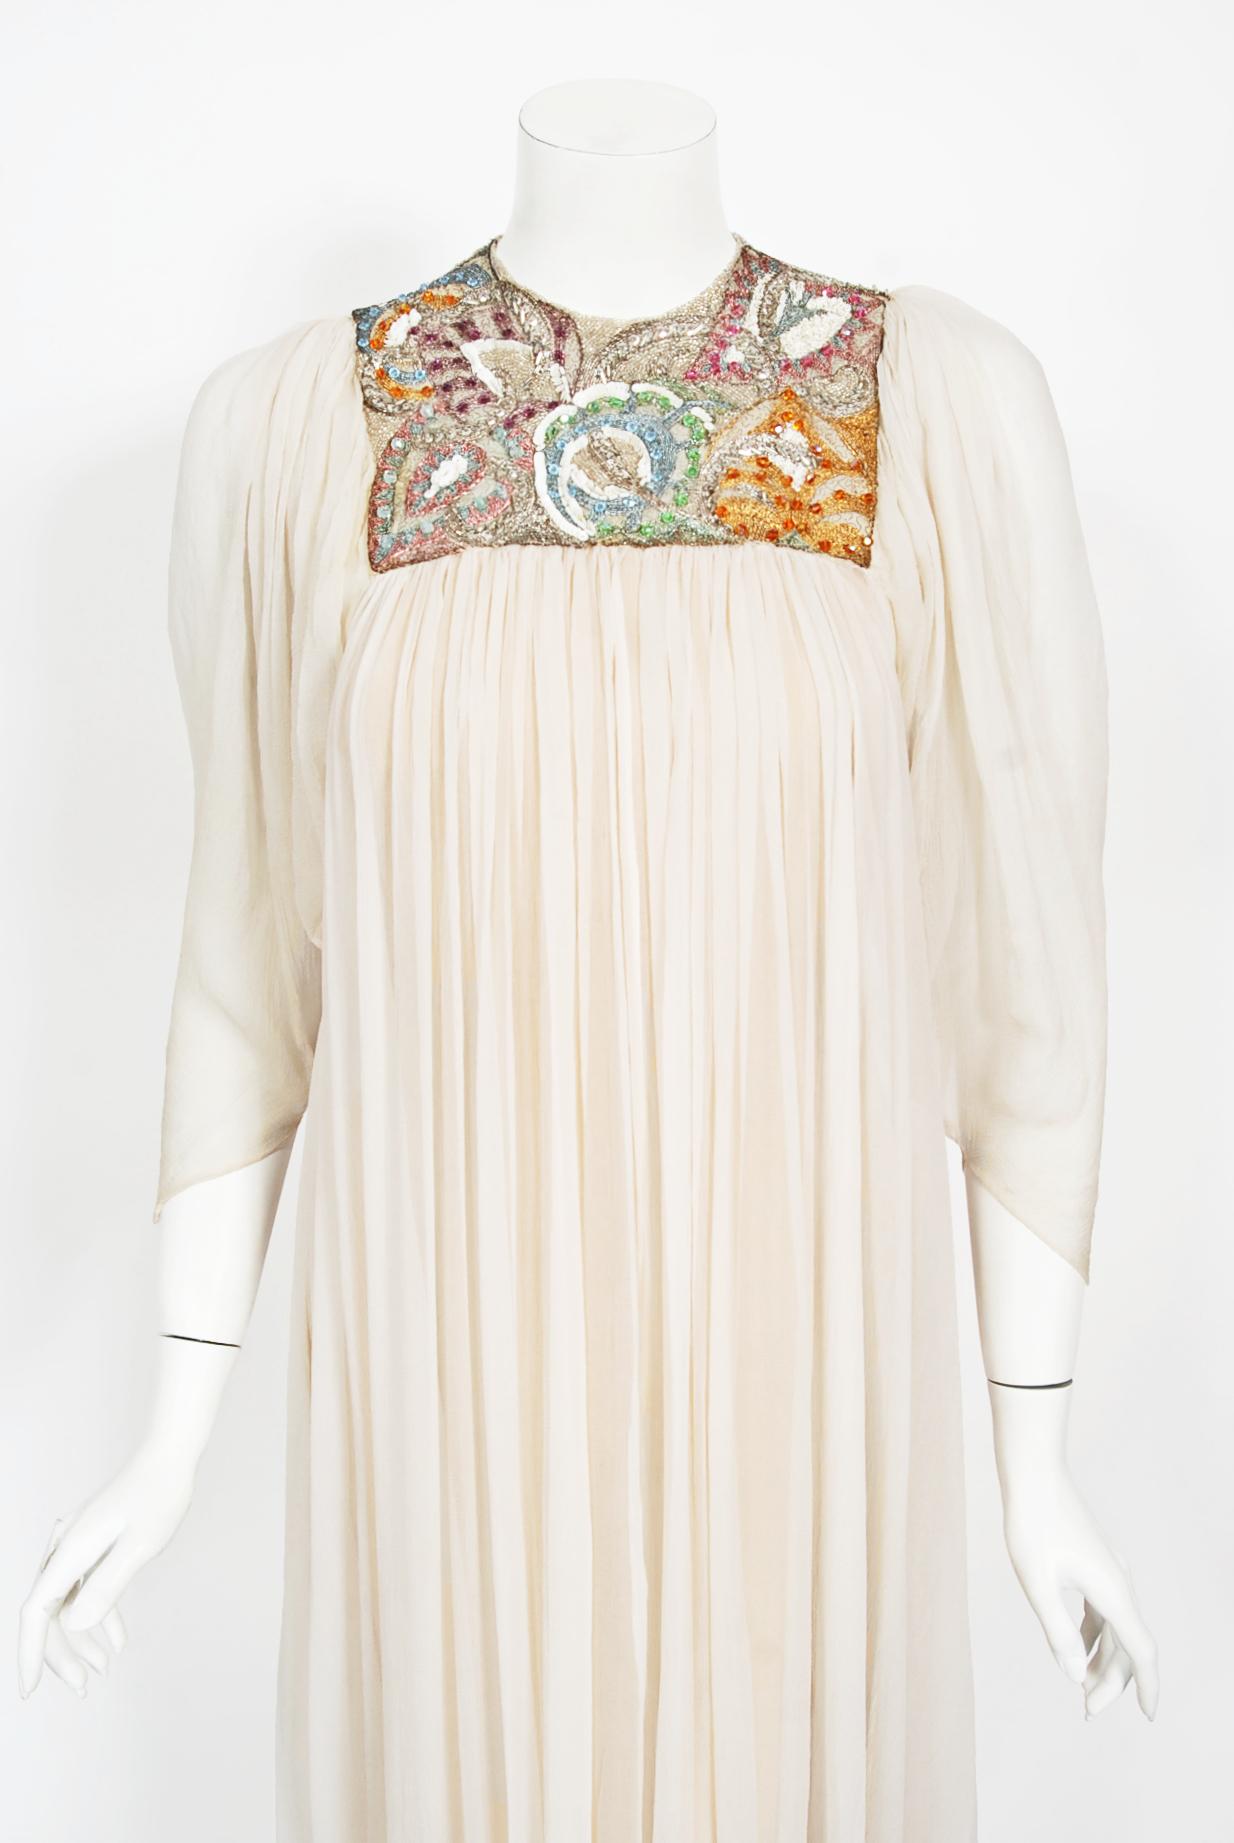 Une inoubliable et incroyablement rare robe de mariée déesse en soie ivoire haute couture de Madame Grès datant du milieu des années 1970. Ce look éthéré a également été somptueusement embelli par Lesage, une maison de broderie française